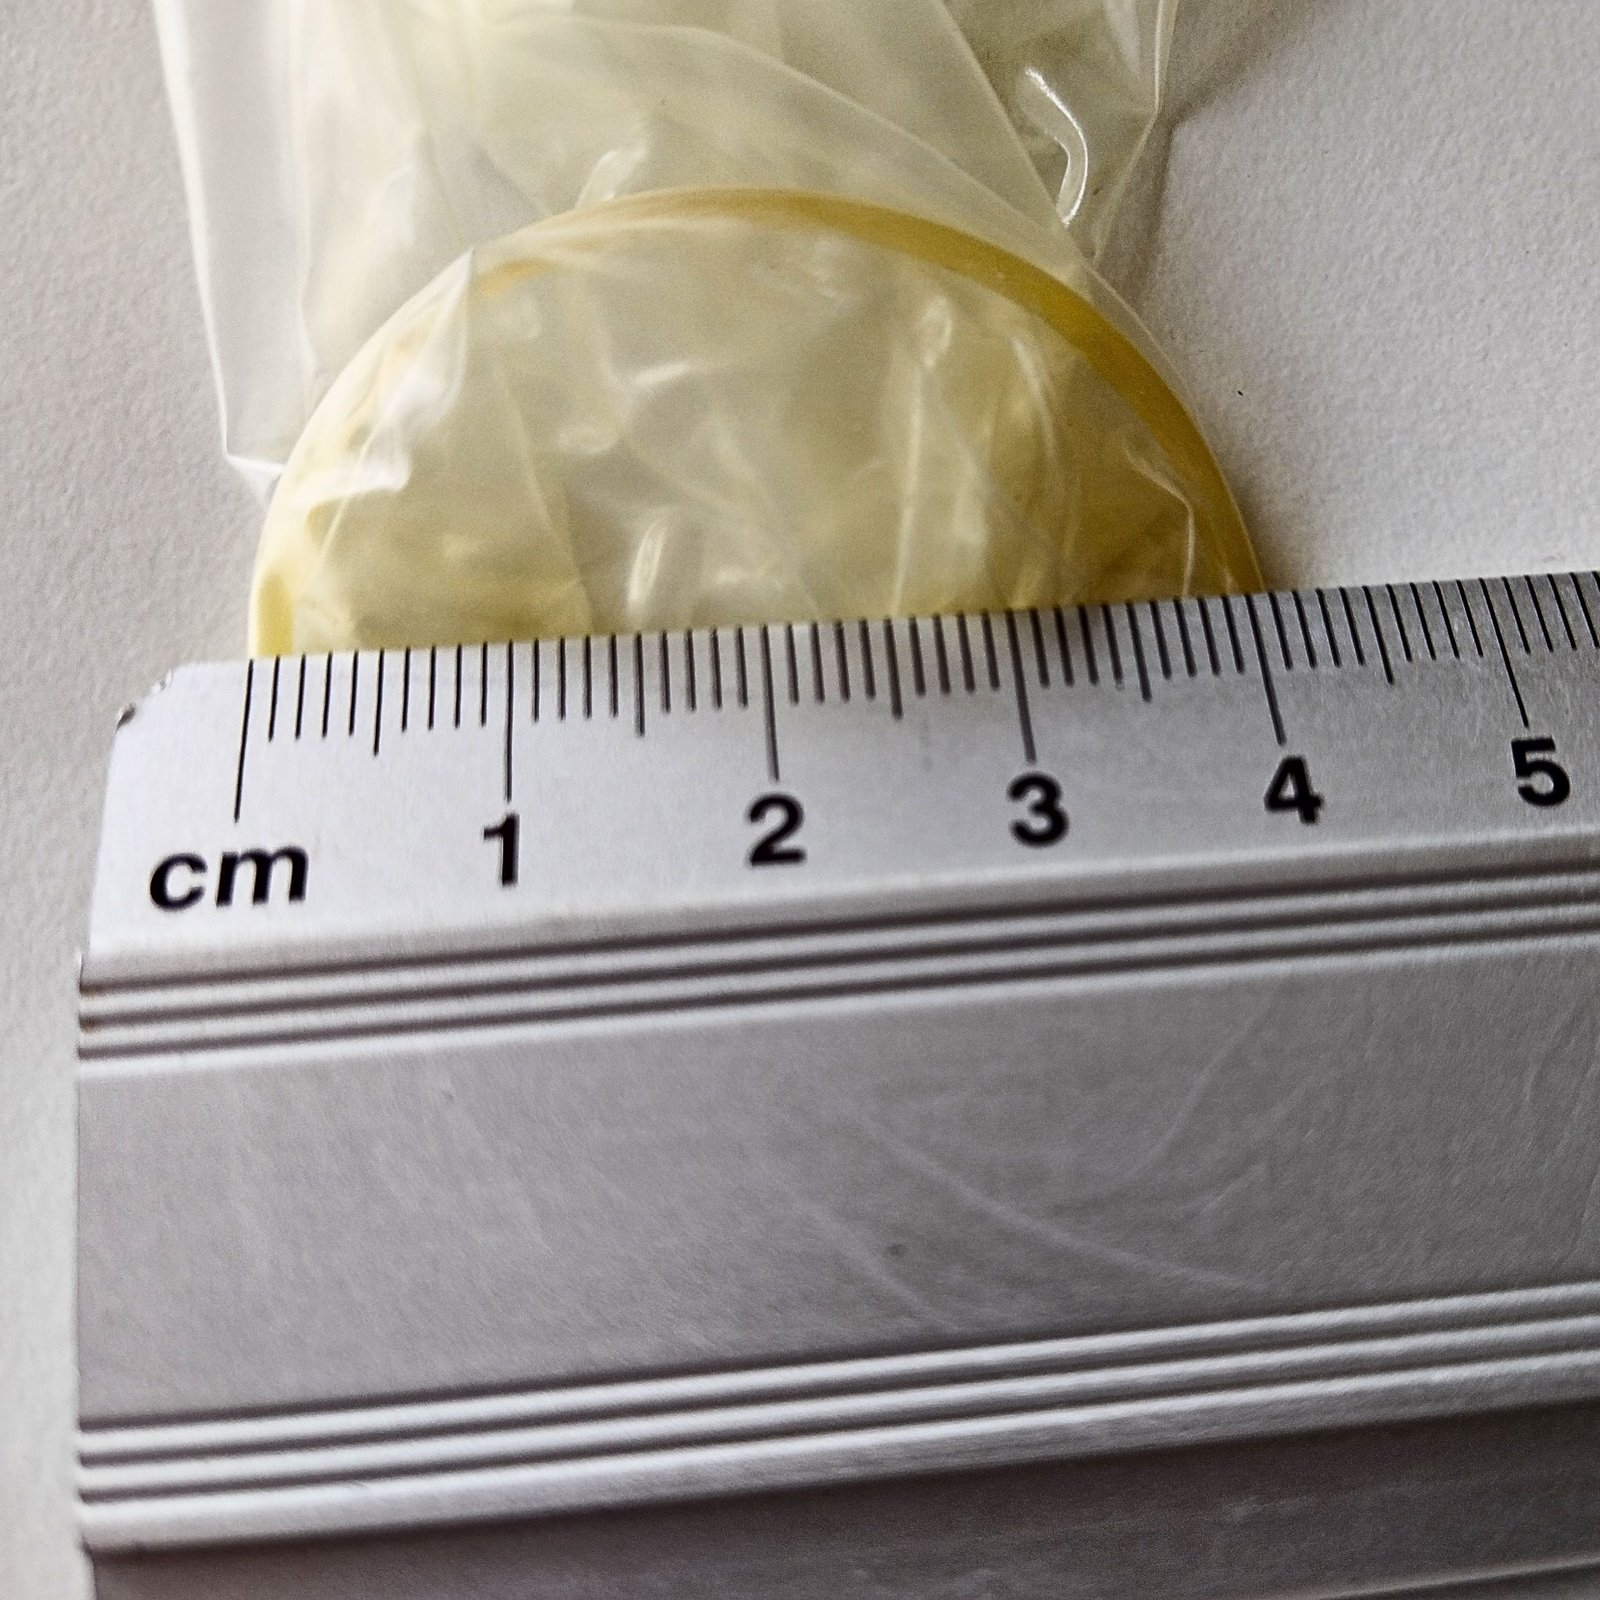 Måling af diameteren på et kondom